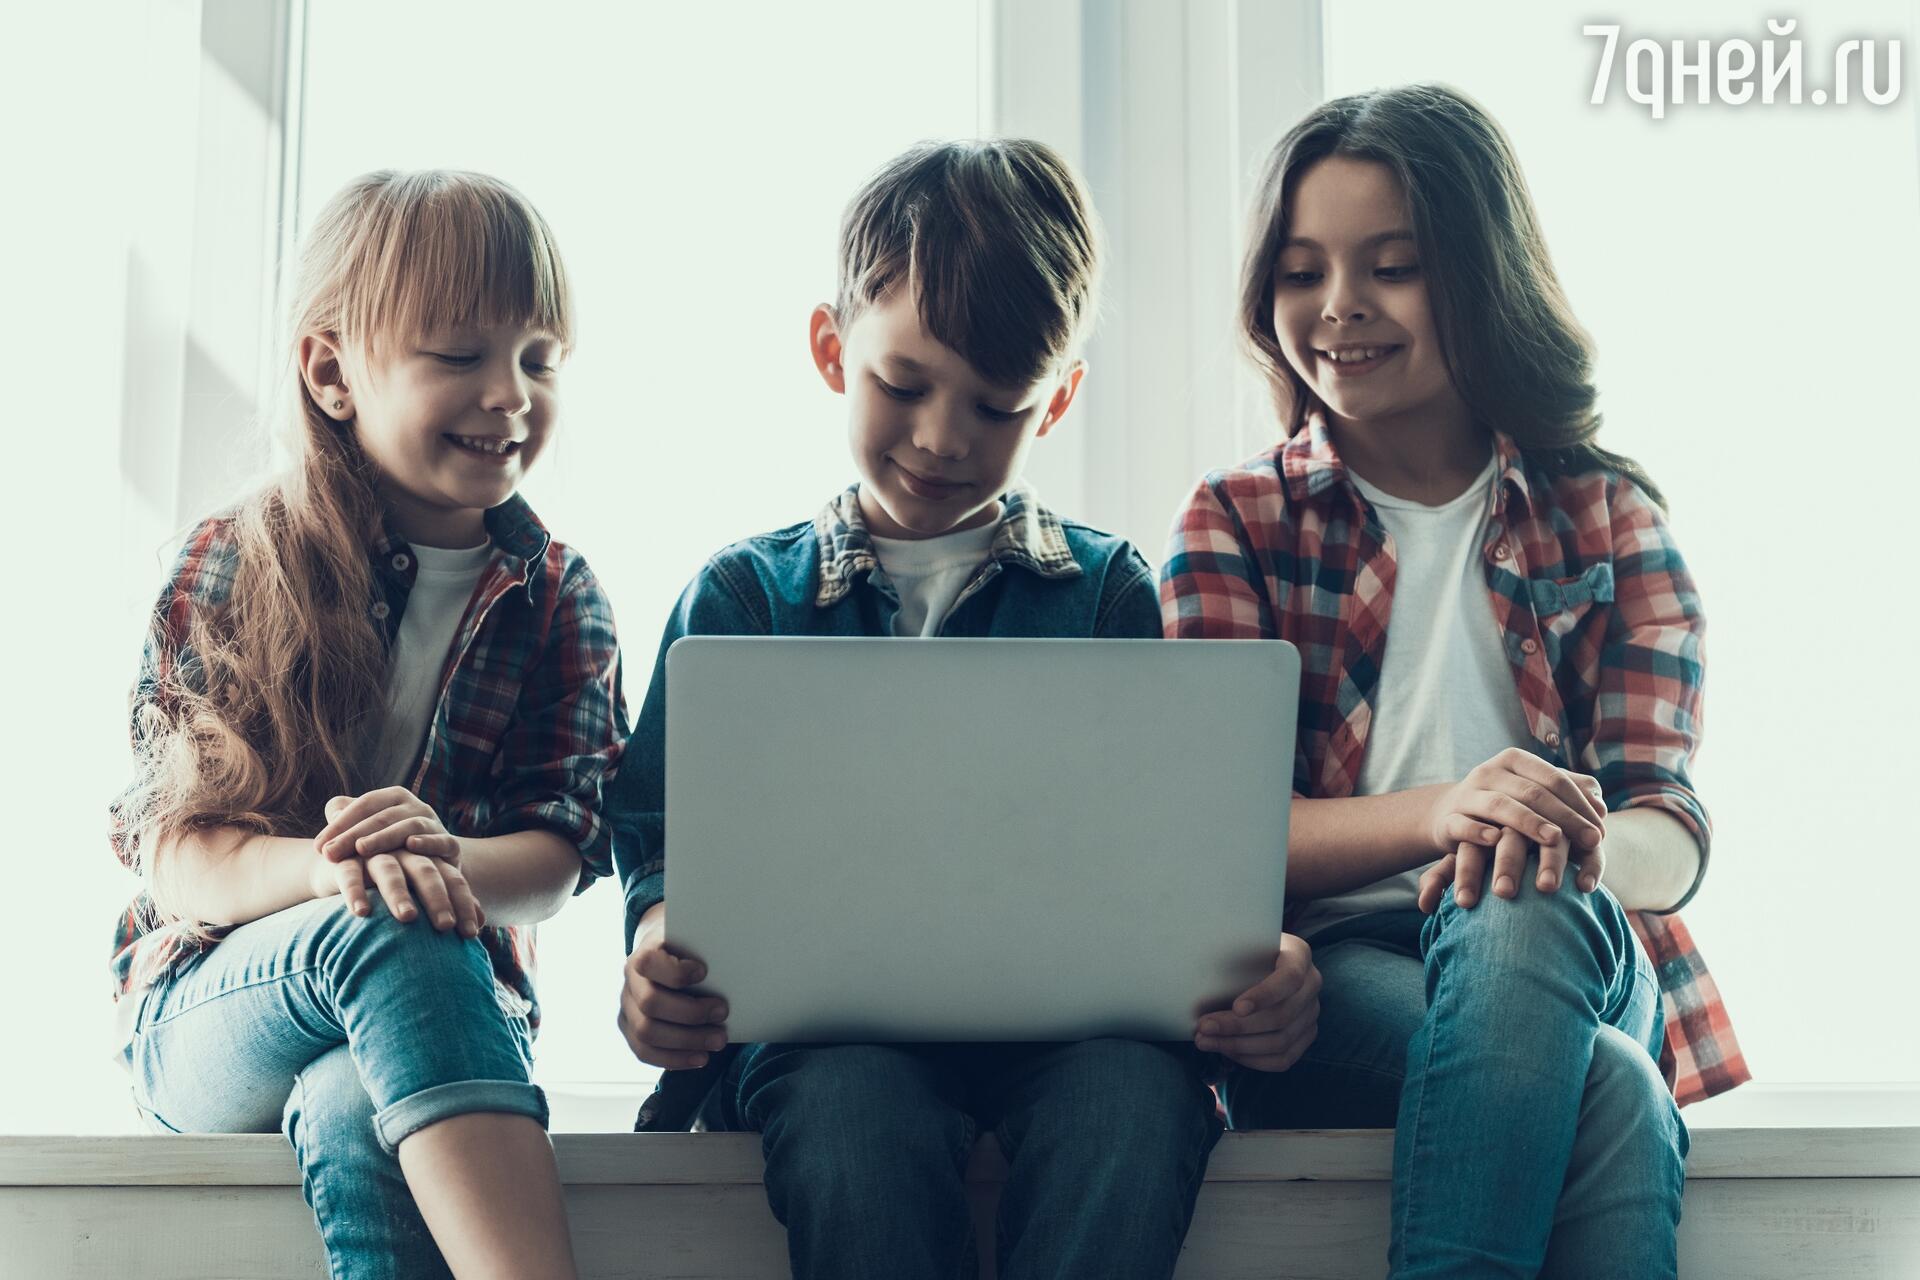 Правила безопасности в Интернете для детей как контролировать ребенка онлайн